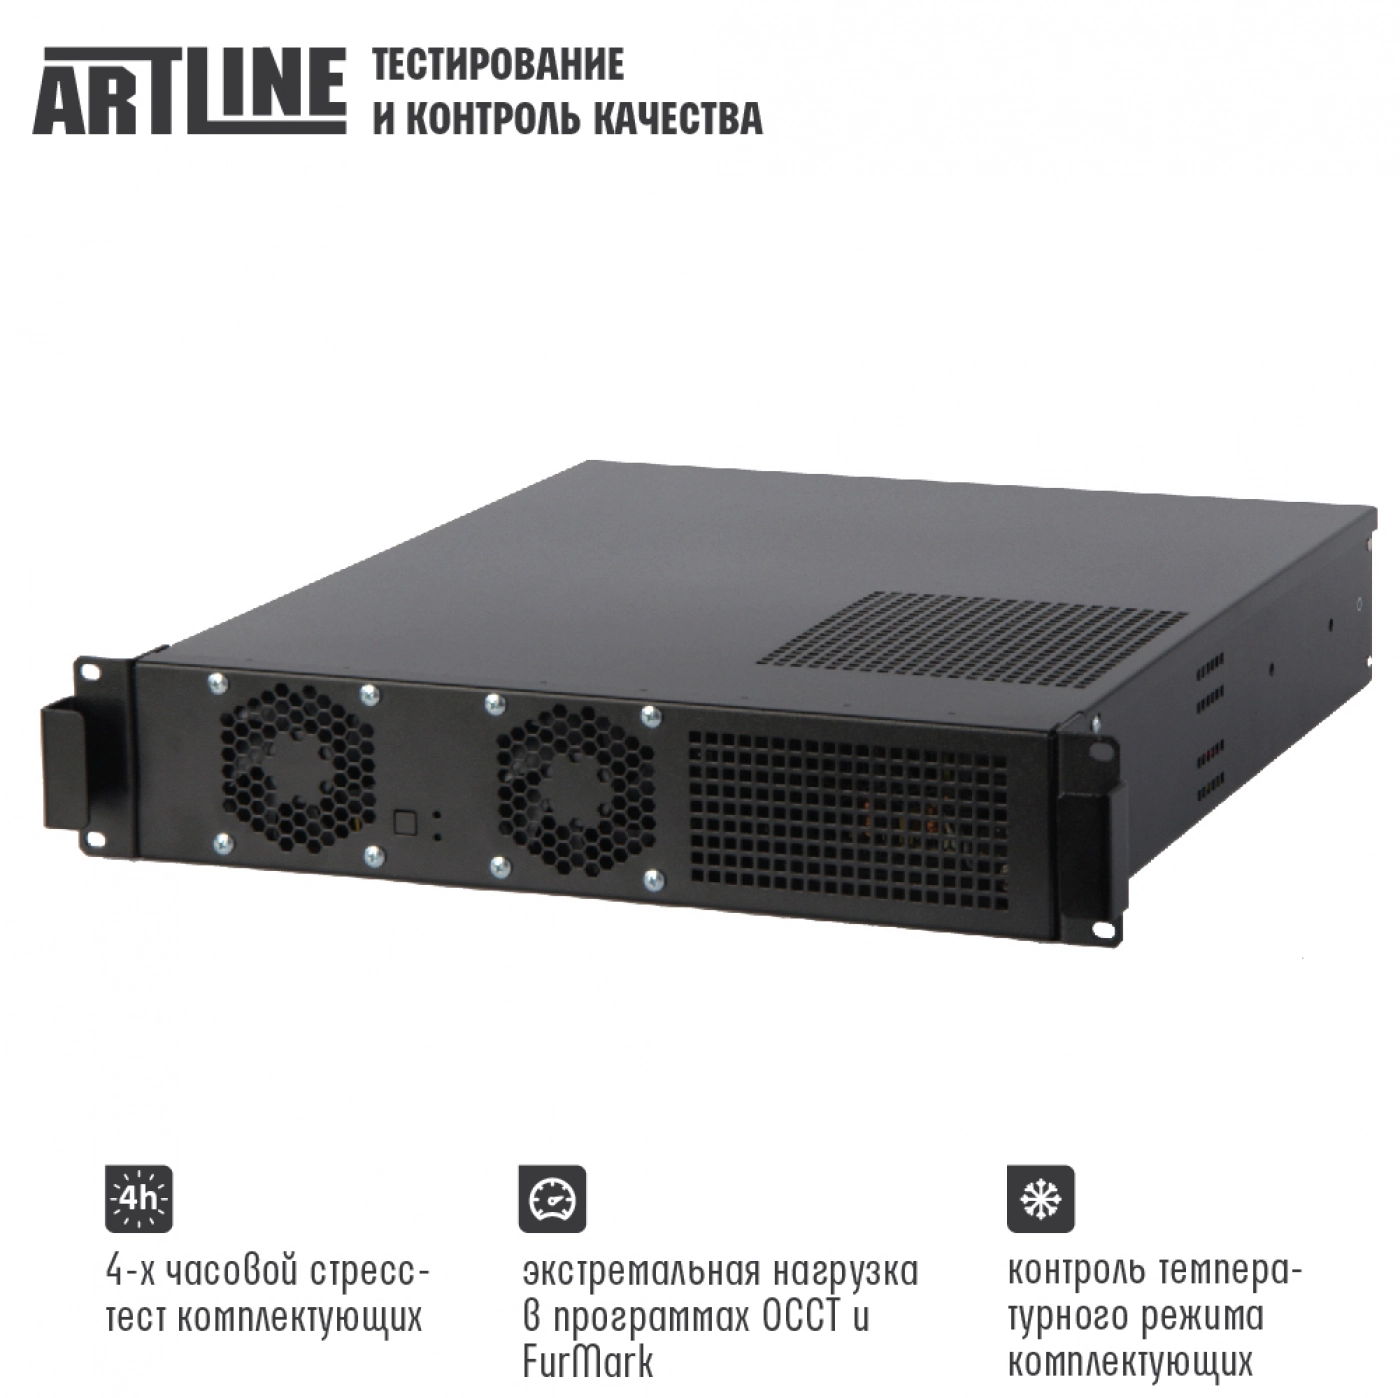 Купить Сервер ARTLINE Business R15v11 - фото 4